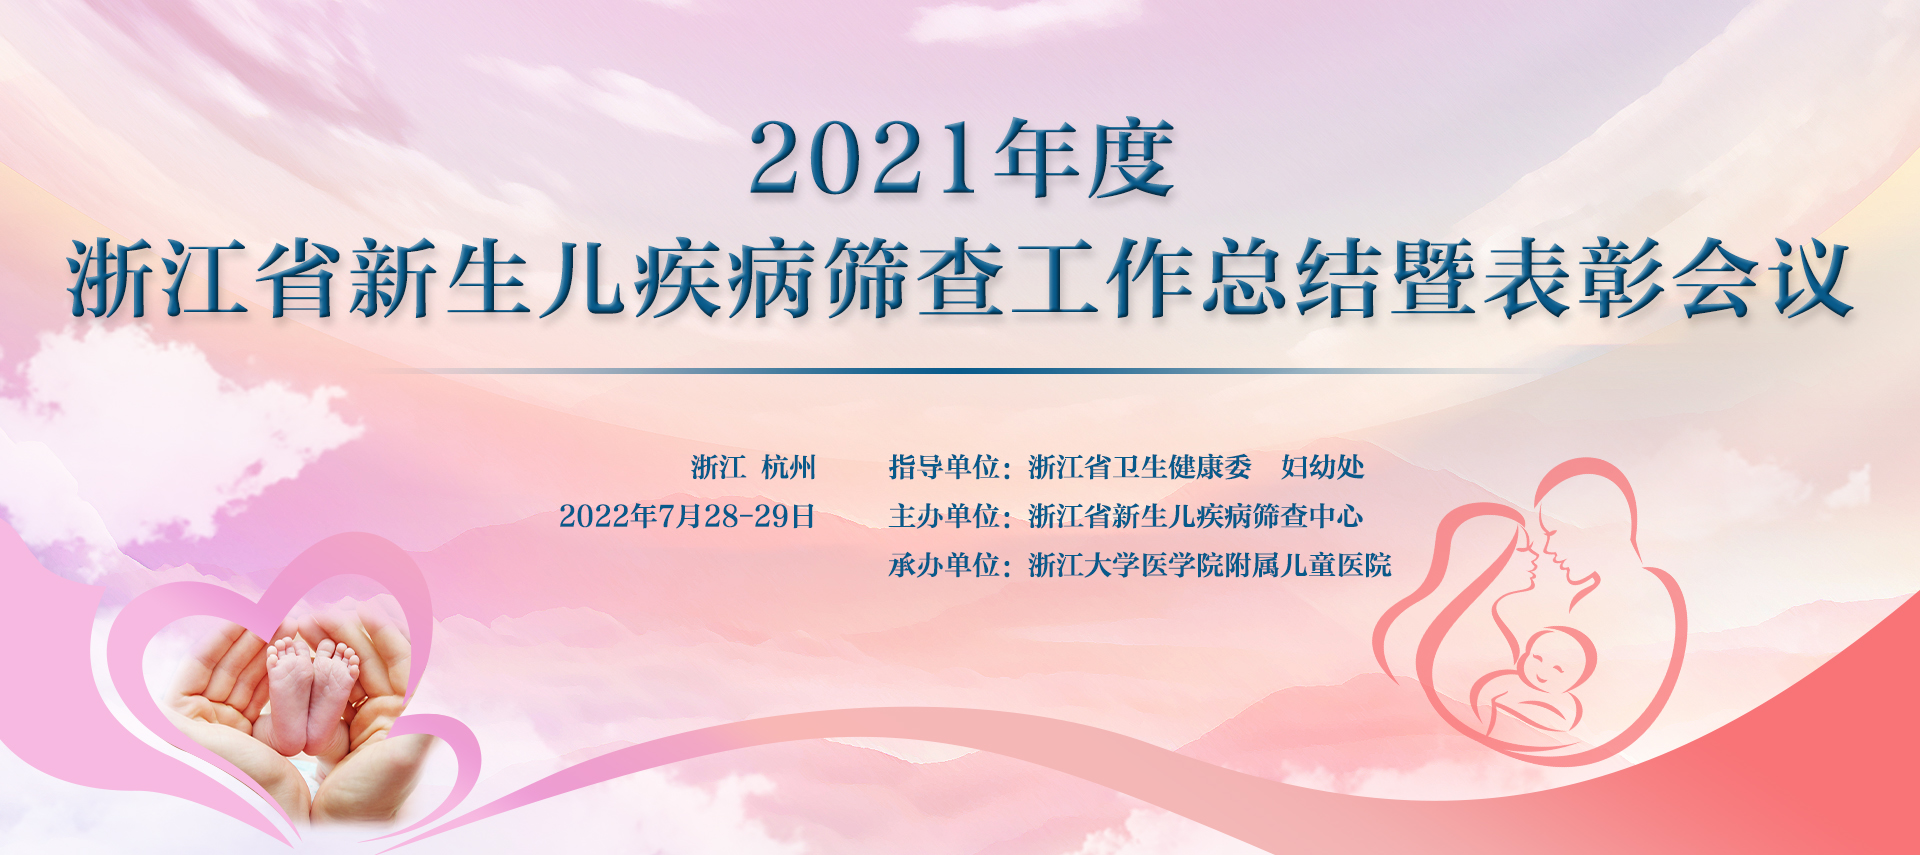 2021年度浙江省新生儿疾病筛查工作总结暨表彰会议